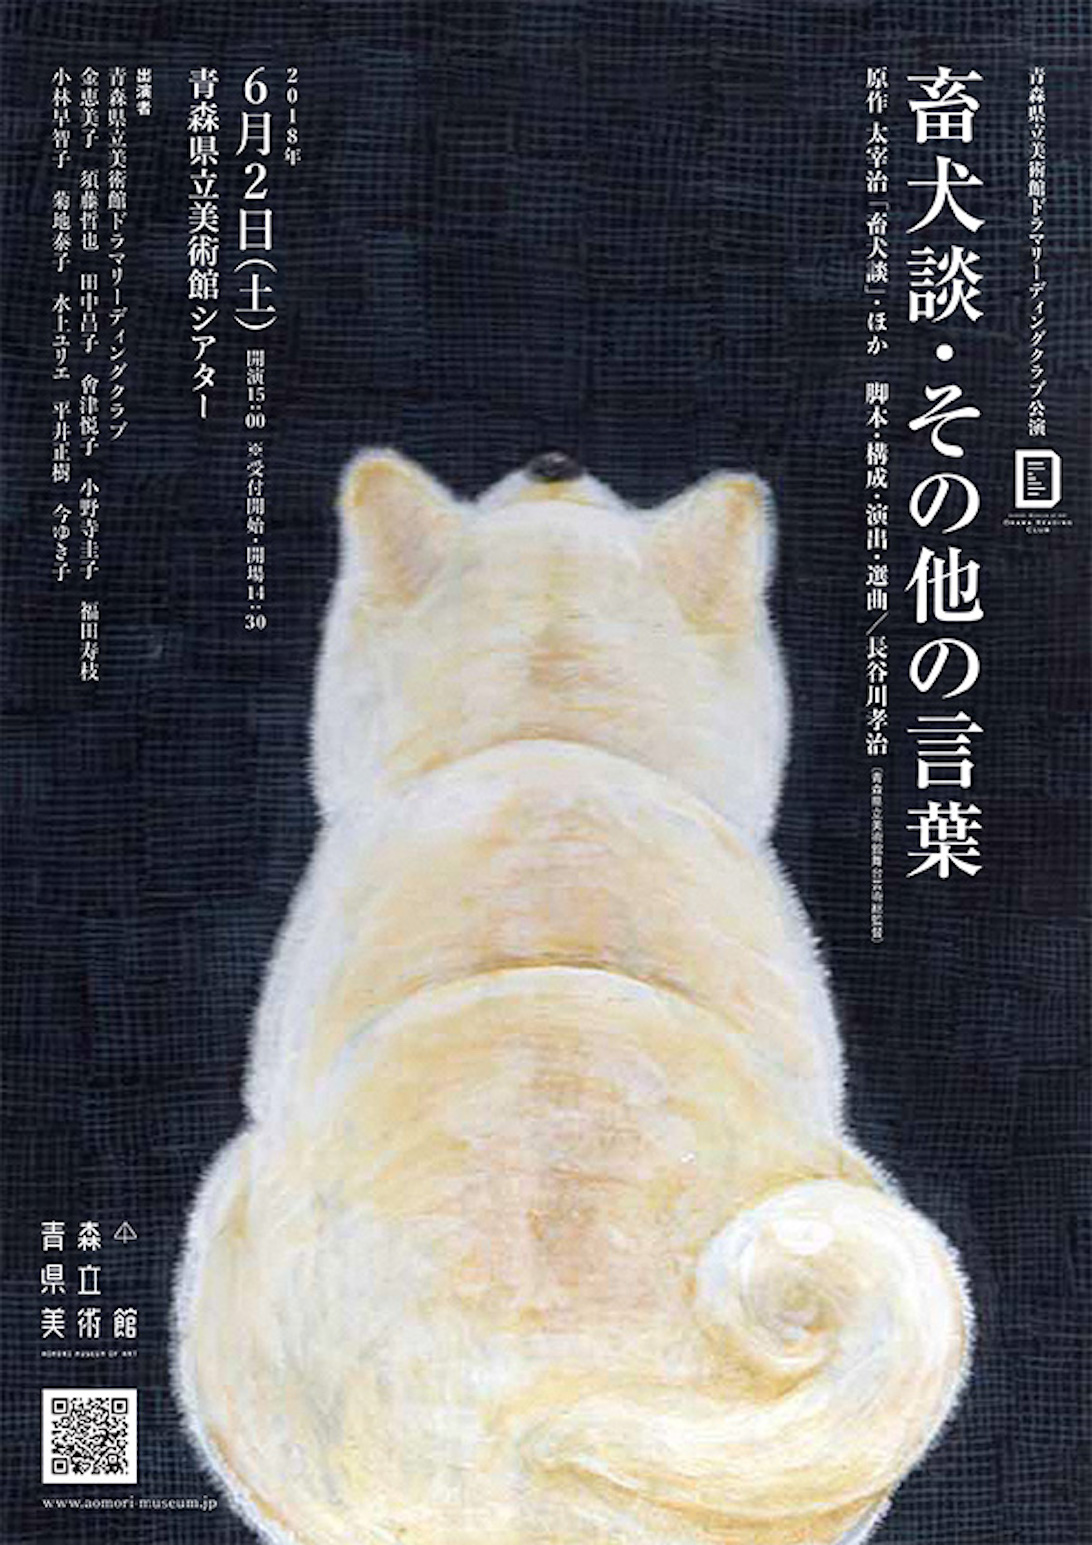 青森県立美術館ドラマリーディングクラブ公演 「畜犬談・その他の言葉」